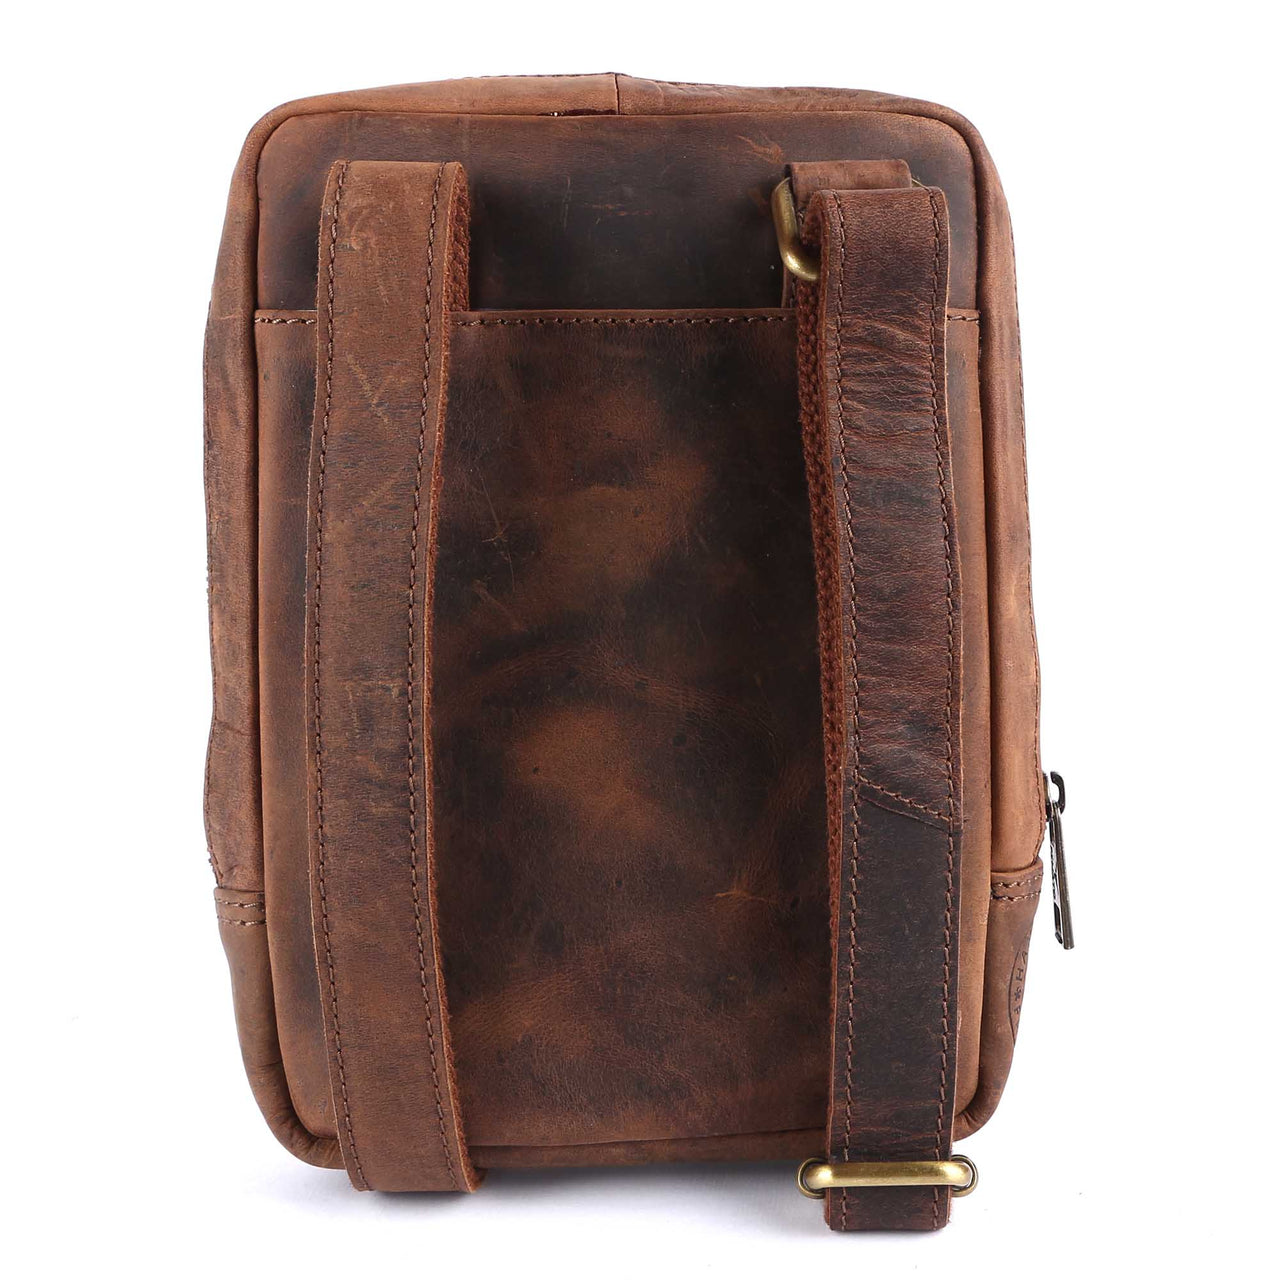 Pinato Genuine Leather Cognac Messenger Bag for Men & Women (PL-5618)